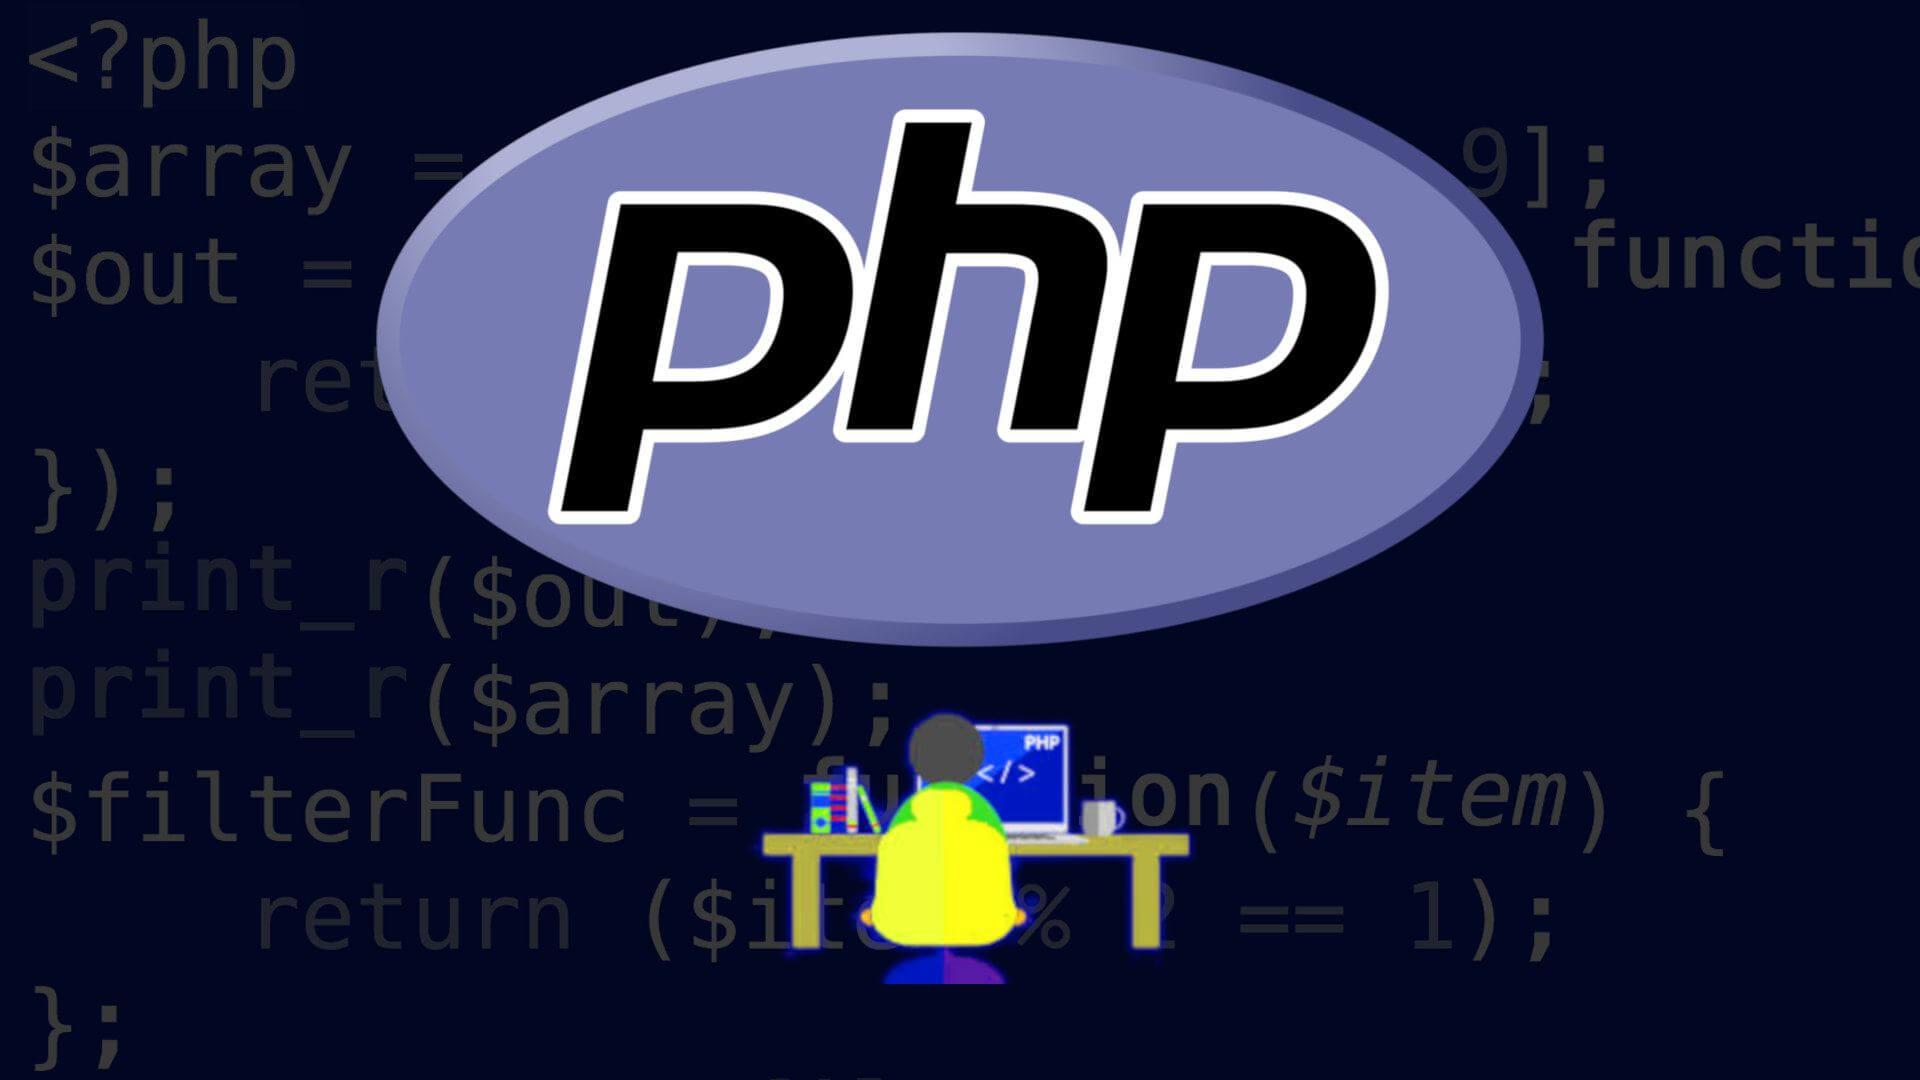 Kinotik php. Php язык программирования. Php программирование. РНР что это в программировании. РНР язык программирования.